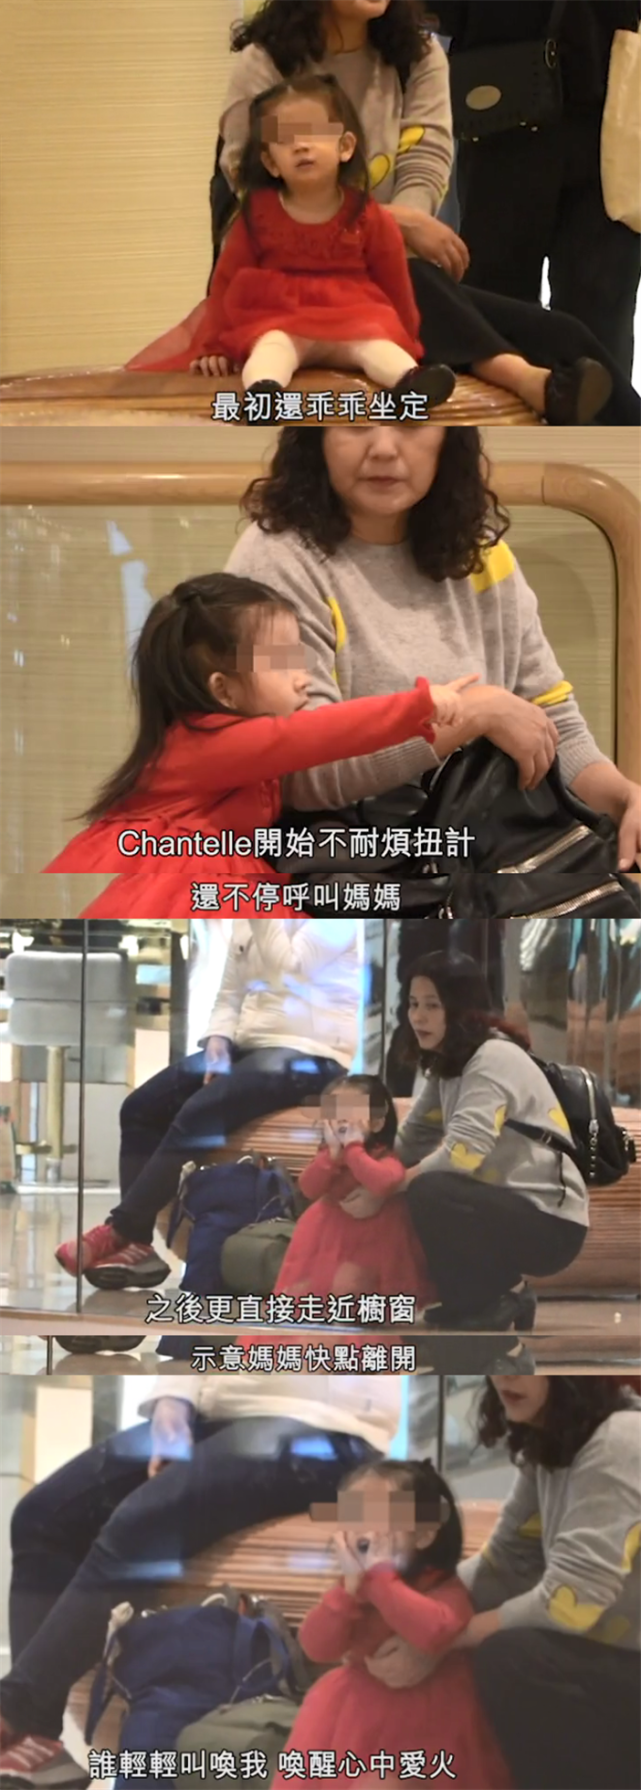 方媛带大女儿出去逛街购物 2岁女儿突然开心跳舞遗传郭富城天赋